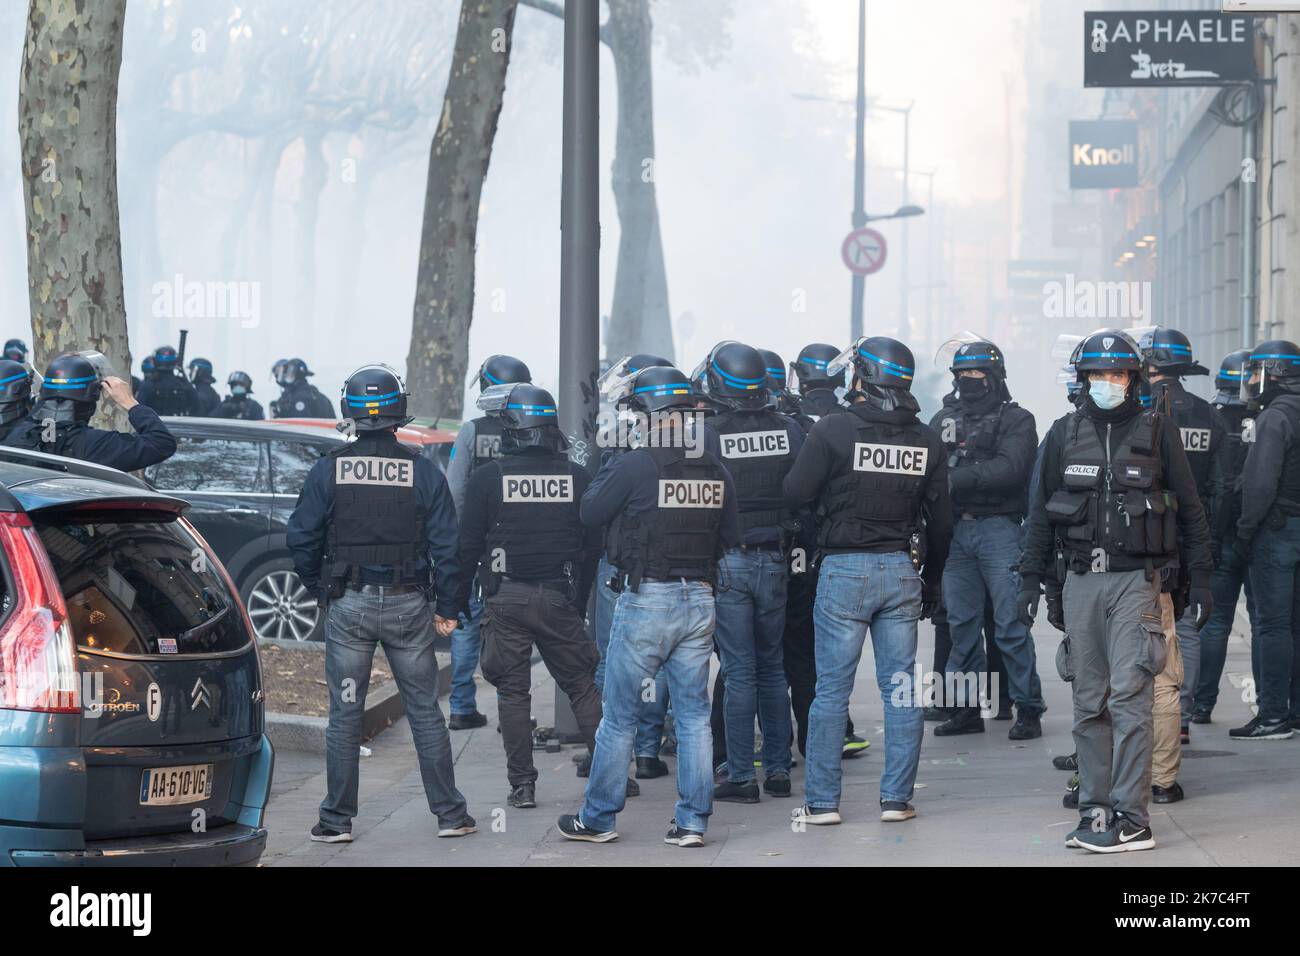 ©Nicolas Beaumont / Le Pictorium/MAXPPP - Nicolas Beaumont / Le Pictorium - 28/11/2020 - France / Rhone / Lyon - A proximite de la prefecture du Rhone, une partie des manifestants tentent de forcer les barrage de police. Les policiers repondent par des jets de gaz lacrymogene. Plusieurs manifestations sont organisees en France et notamment a Lyon le samedi 28 novembre 2020 conte le projet de loi Securite Globale et en particulier l'article 24. / 28/11/2020 - France / Rhone (department) / Lyon - Near the Rhone prefecture, some of the demonstrators are trying to force the police roadblock. The p Stock Photo